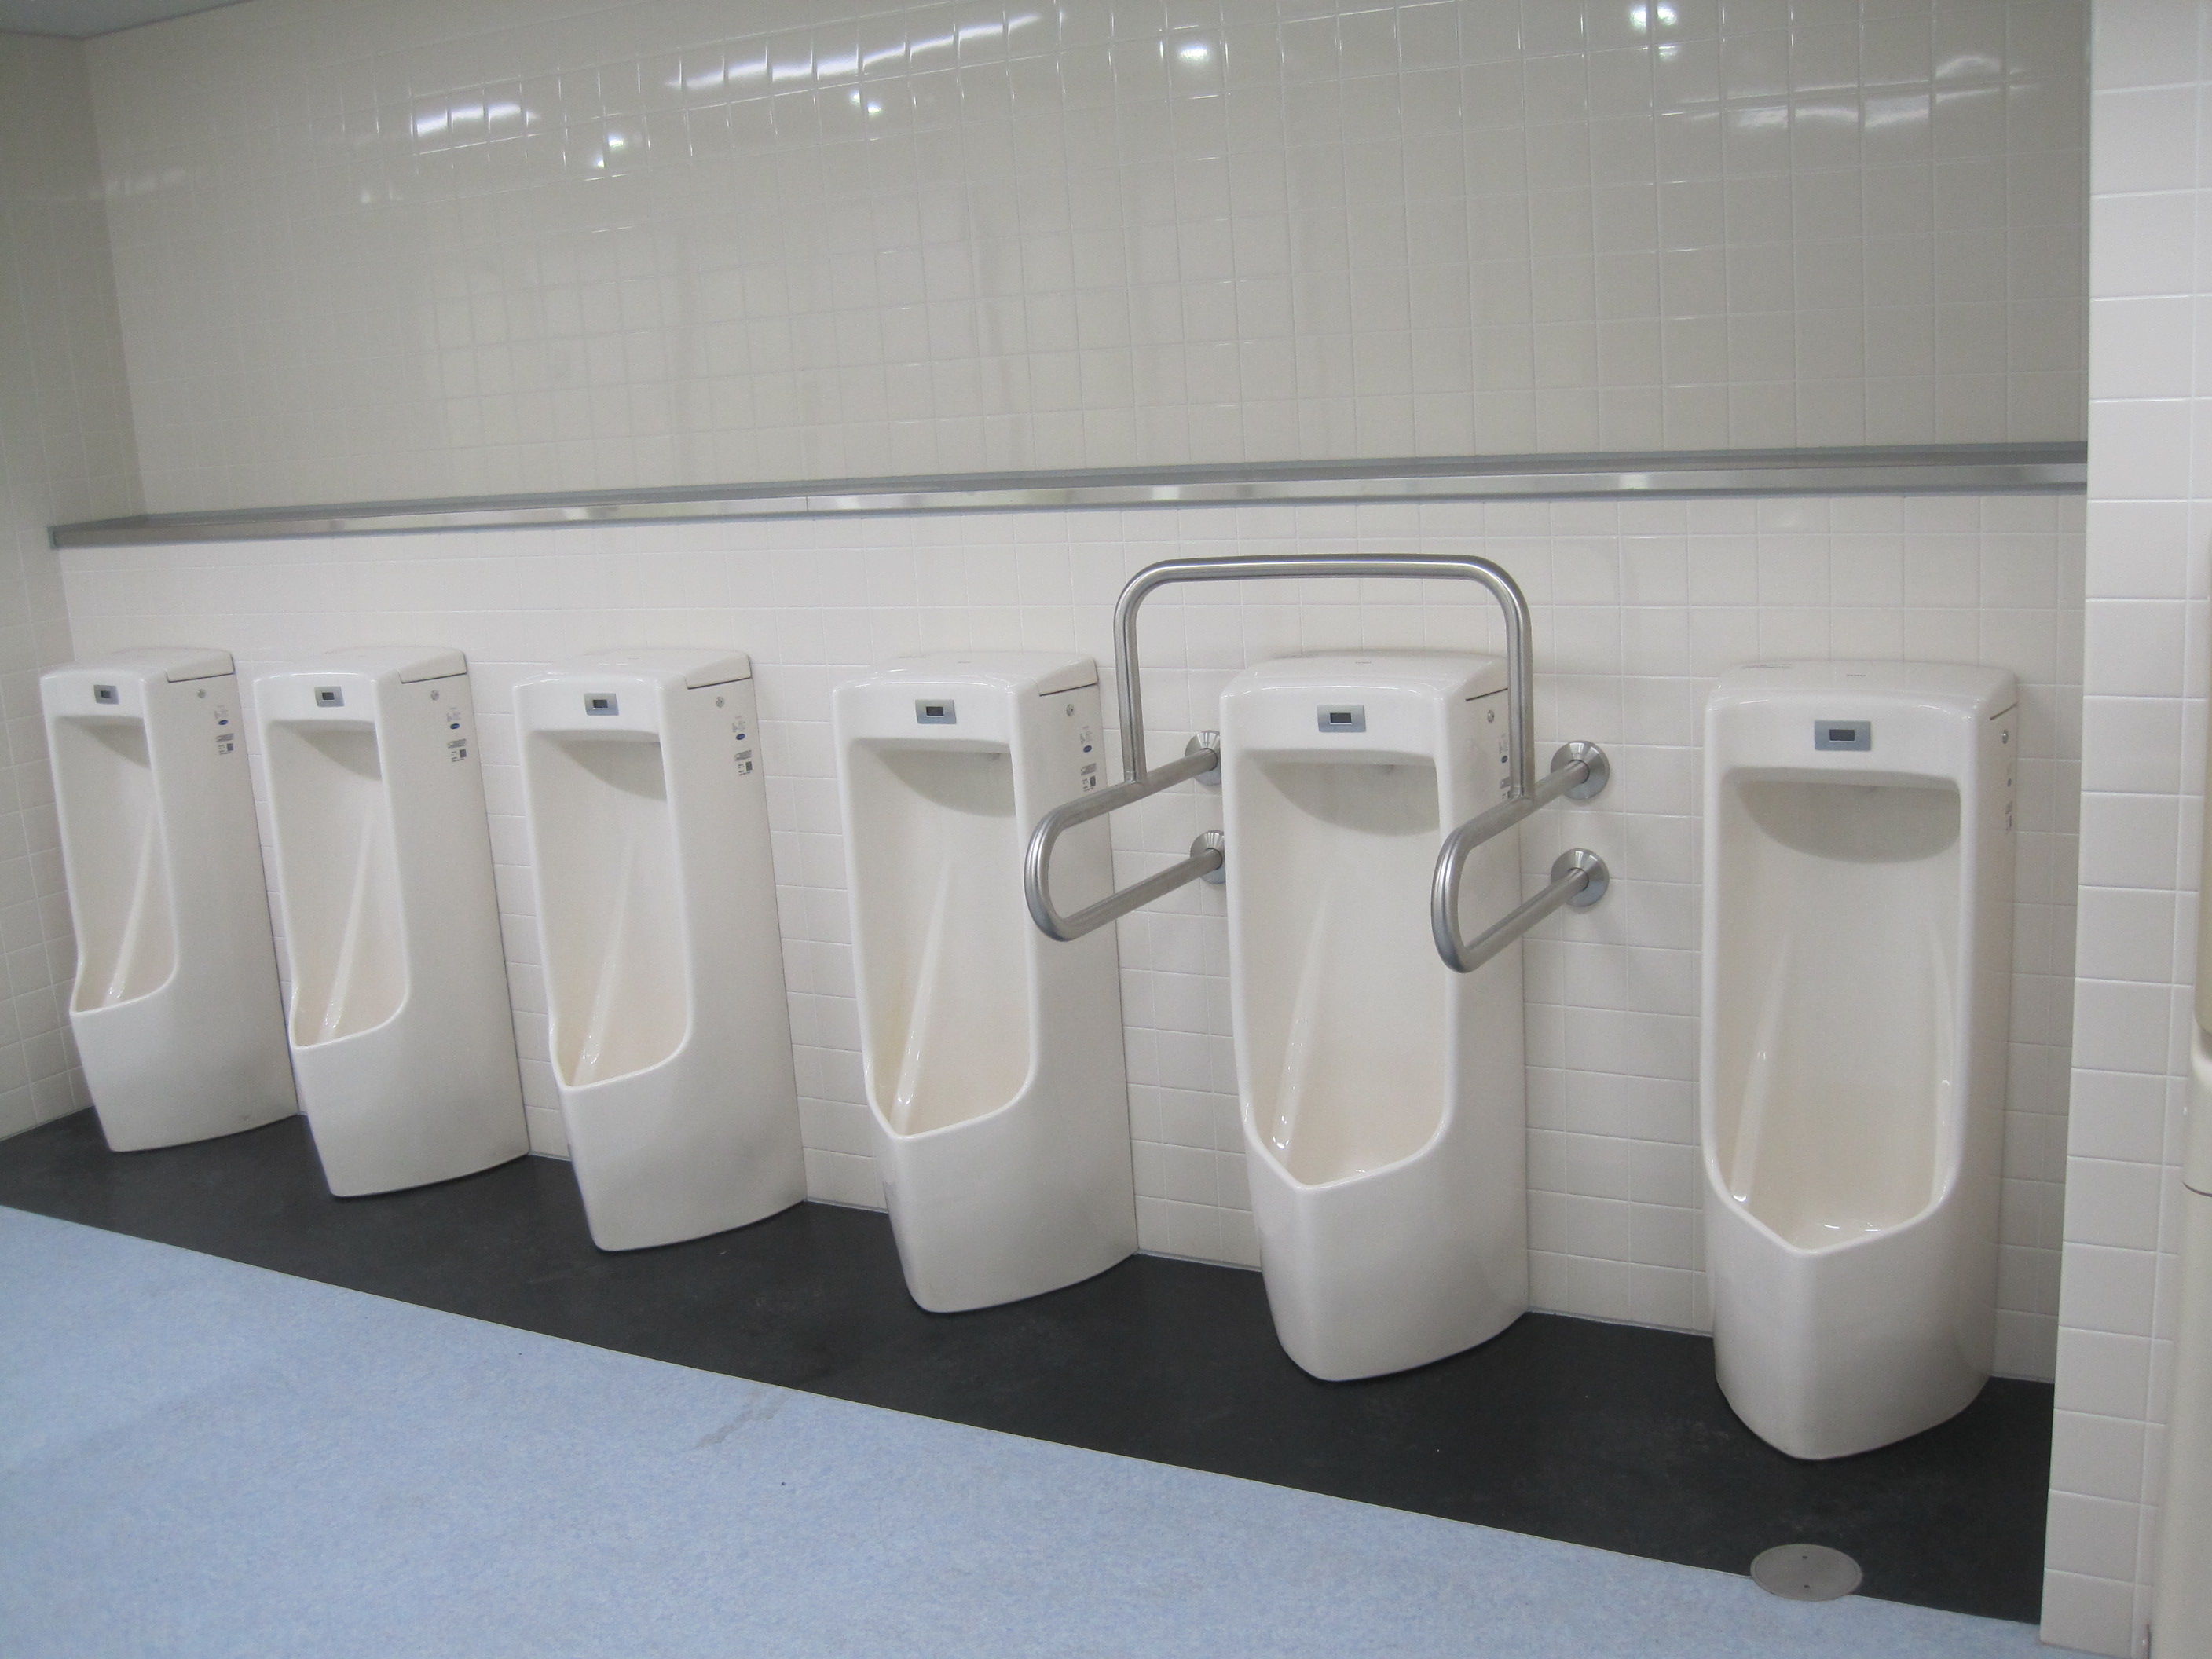 トイレ設備調査日記atosatu 札幌市営地下鉄東豊線栄町駅トイレ改修後